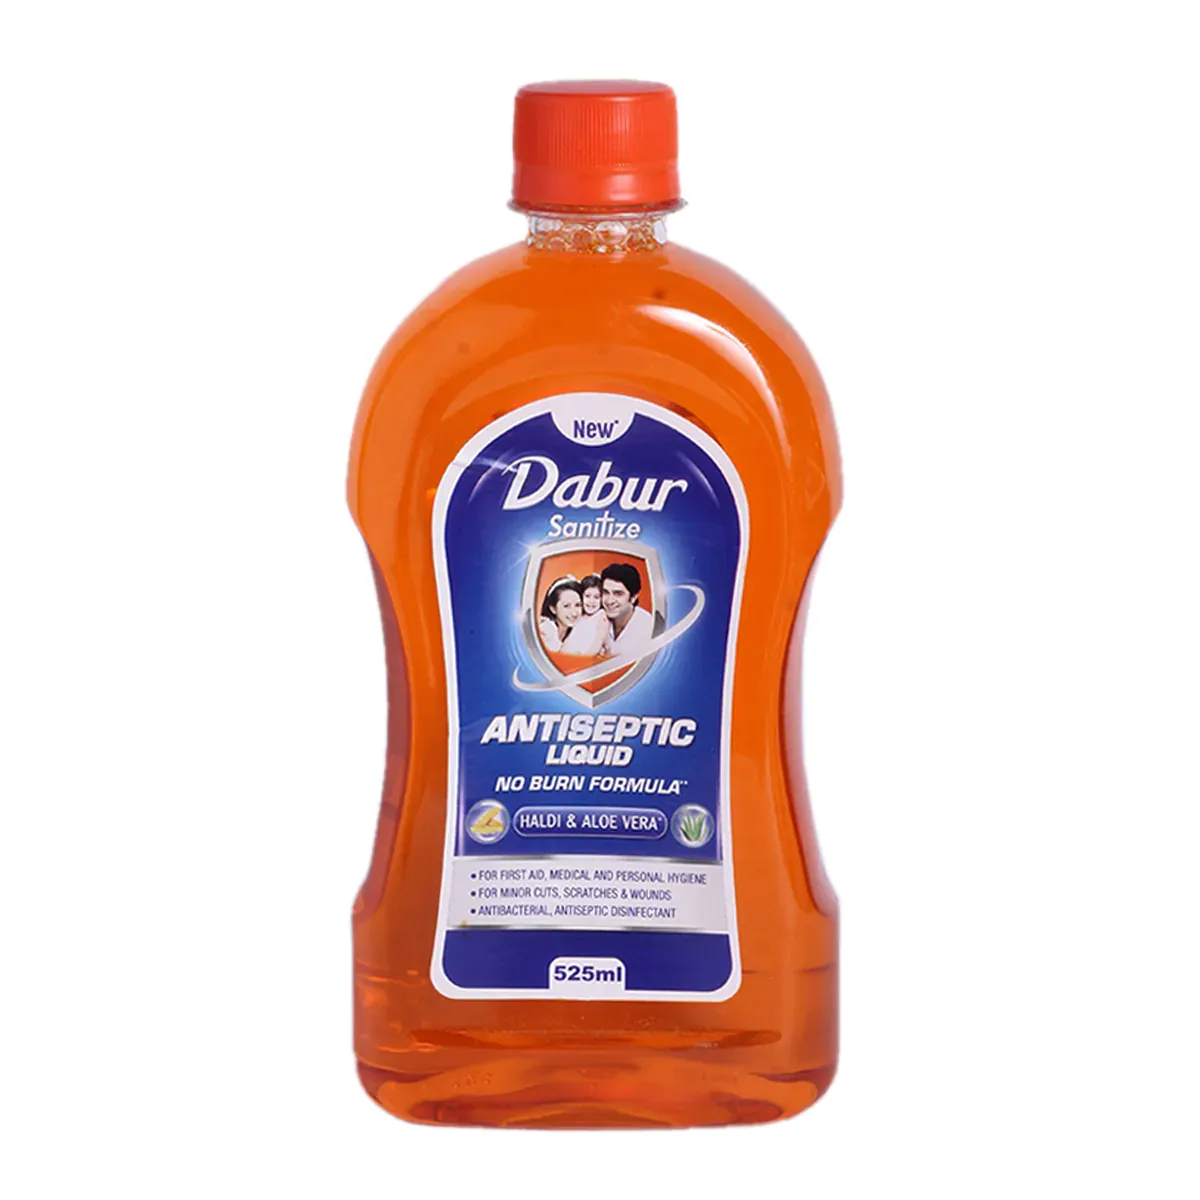 Dabur Sanitize Antiseptic Liquid, 525 ml